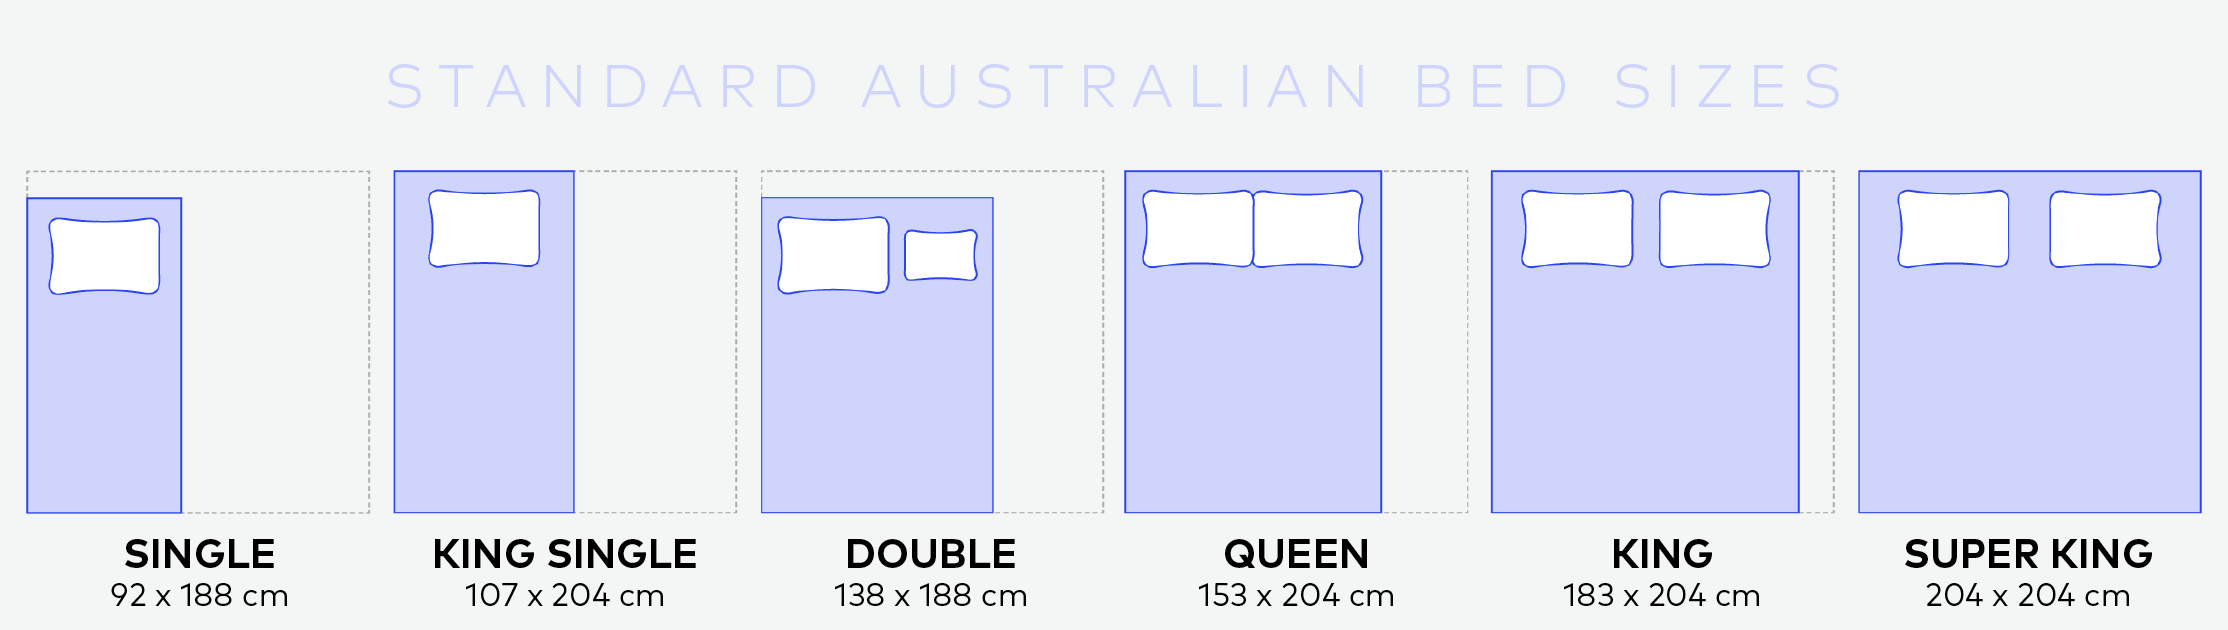 Australian standard bed size guide